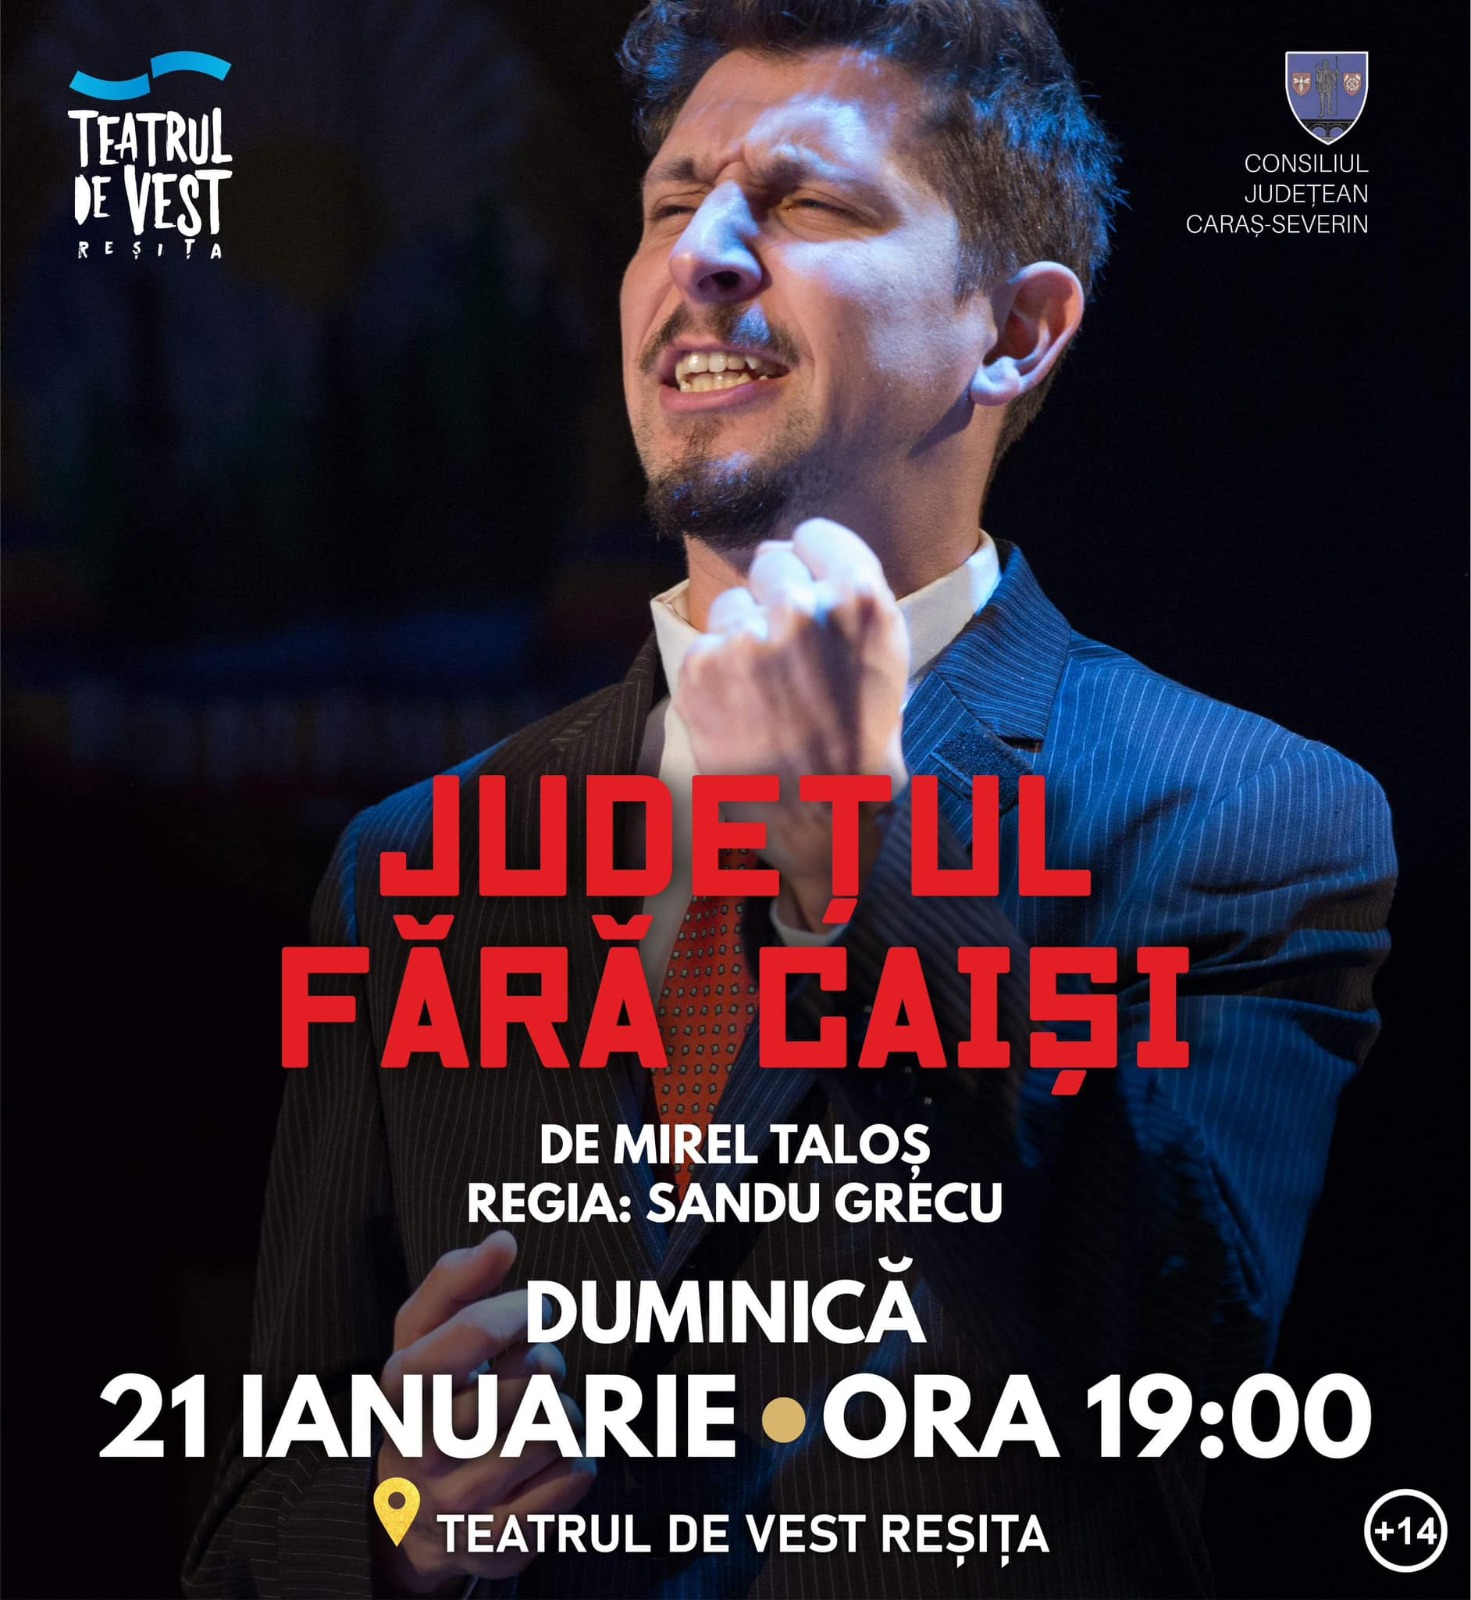 Teatrul de Vest vă așteaptă duminică, 21 Ianuarie de la 19:00 la spectacolul JUDEȚUL FĂRĂ CAIȘI, de Mirel Taloș / regia Sandu Grecu.